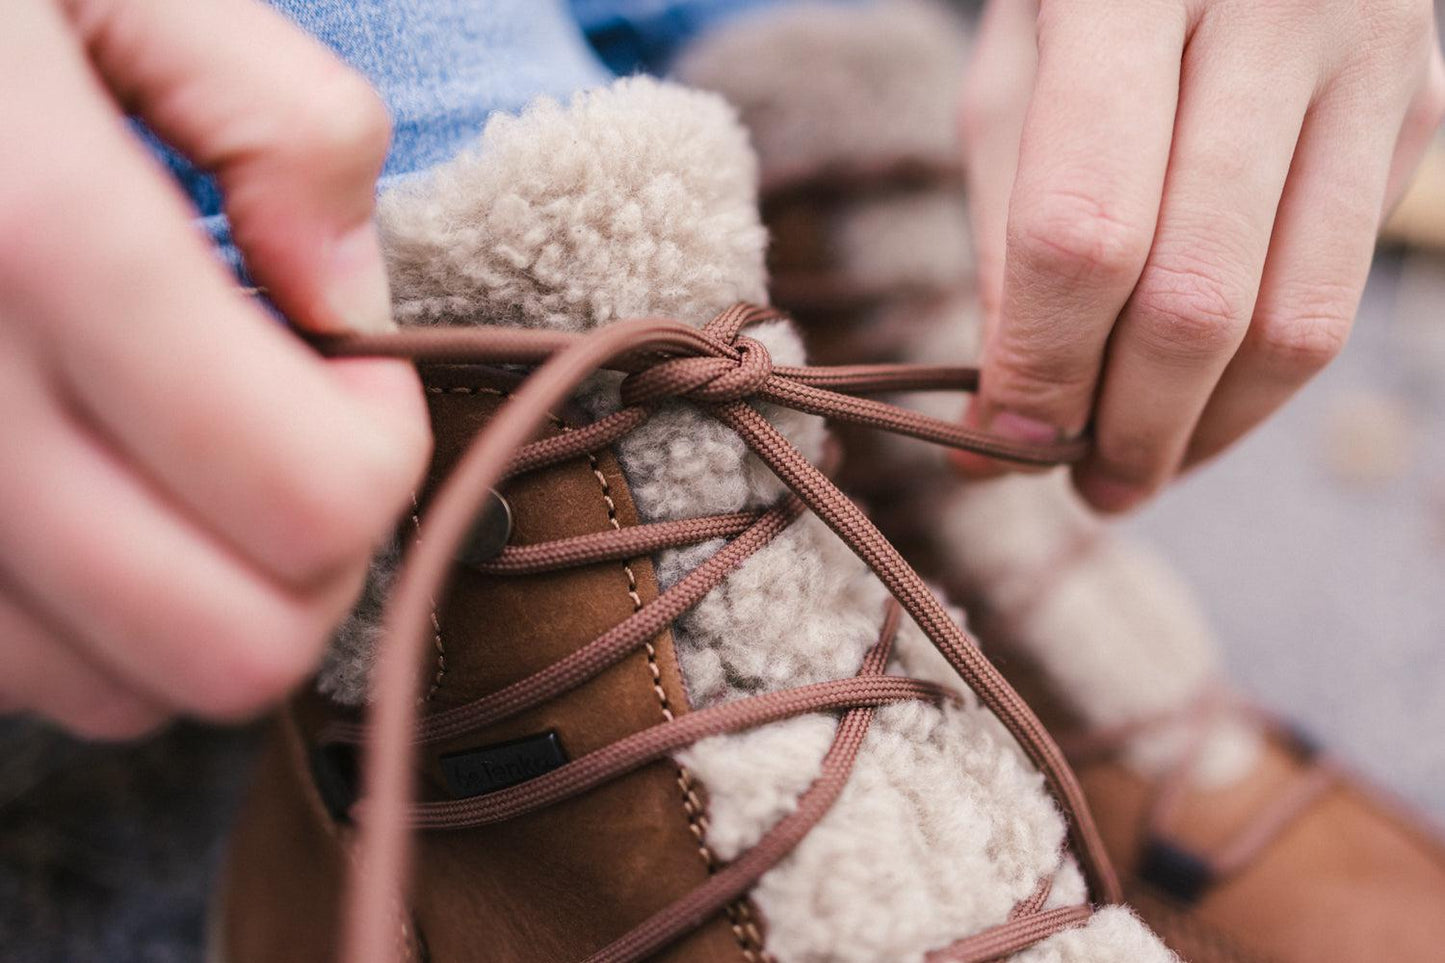 Winter Barefoot Boots Be Lenka Bliss - Brown-Be Lenka-Cacles Barefoot